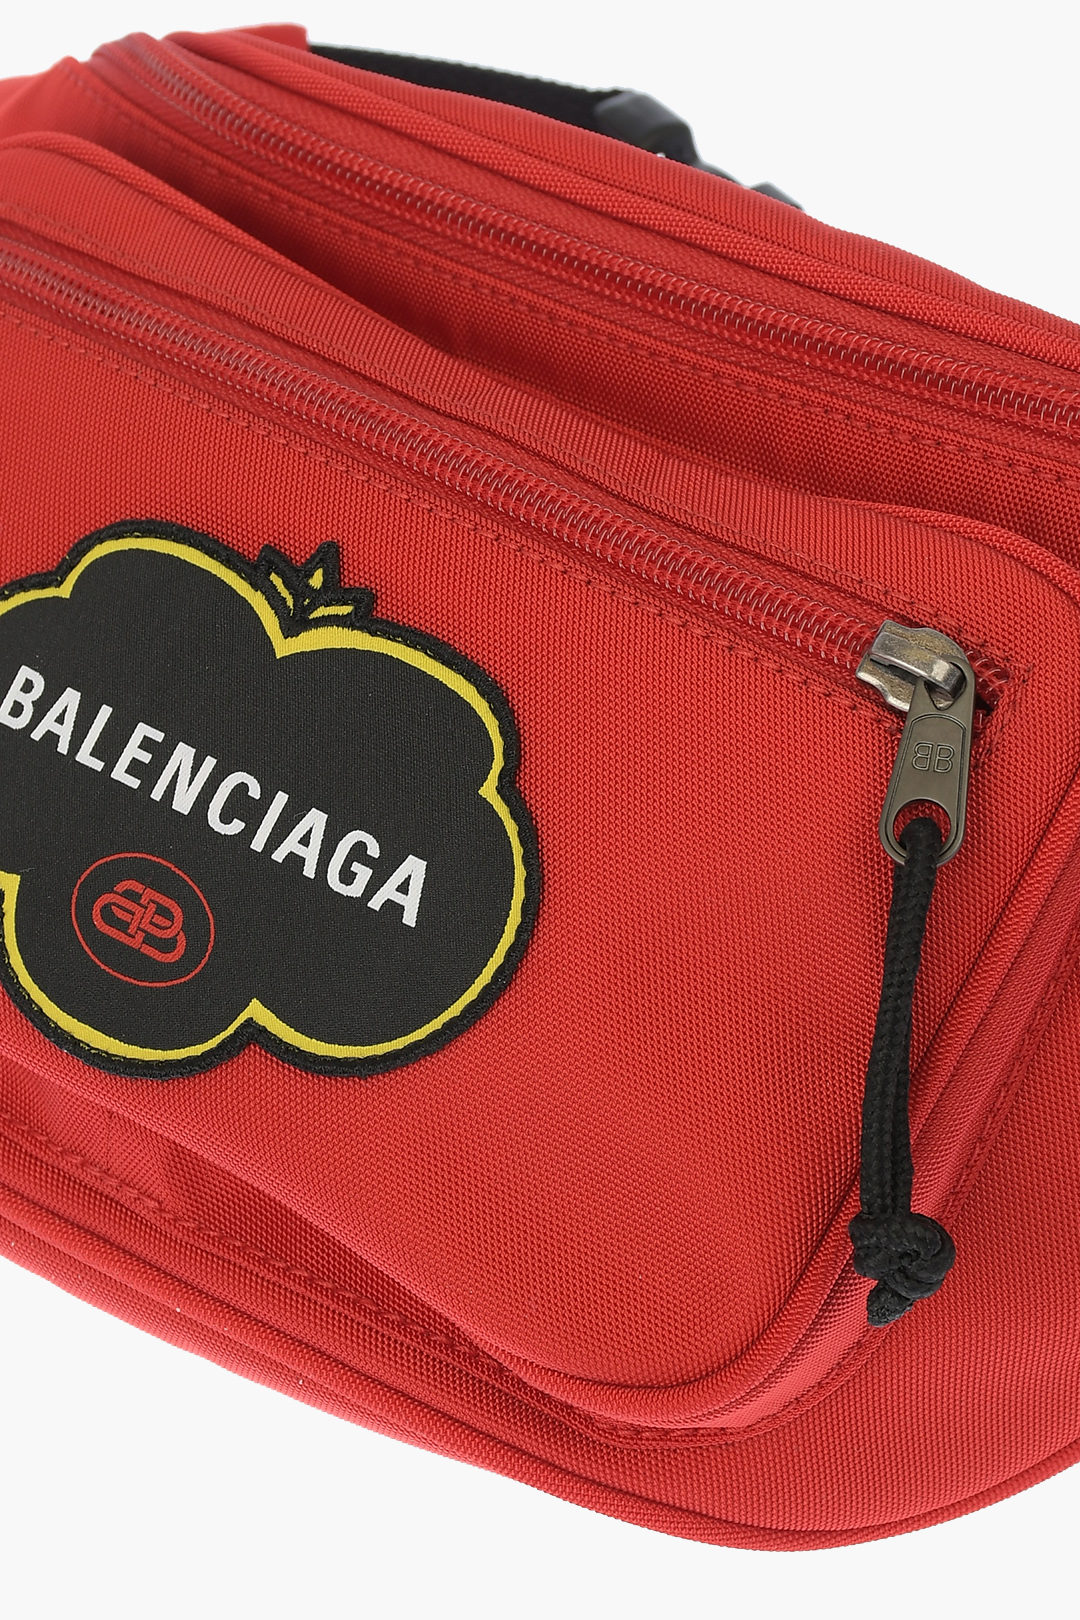 Balenciaga Fabric EXPLORER Bum Bag men - Glamood Outlet